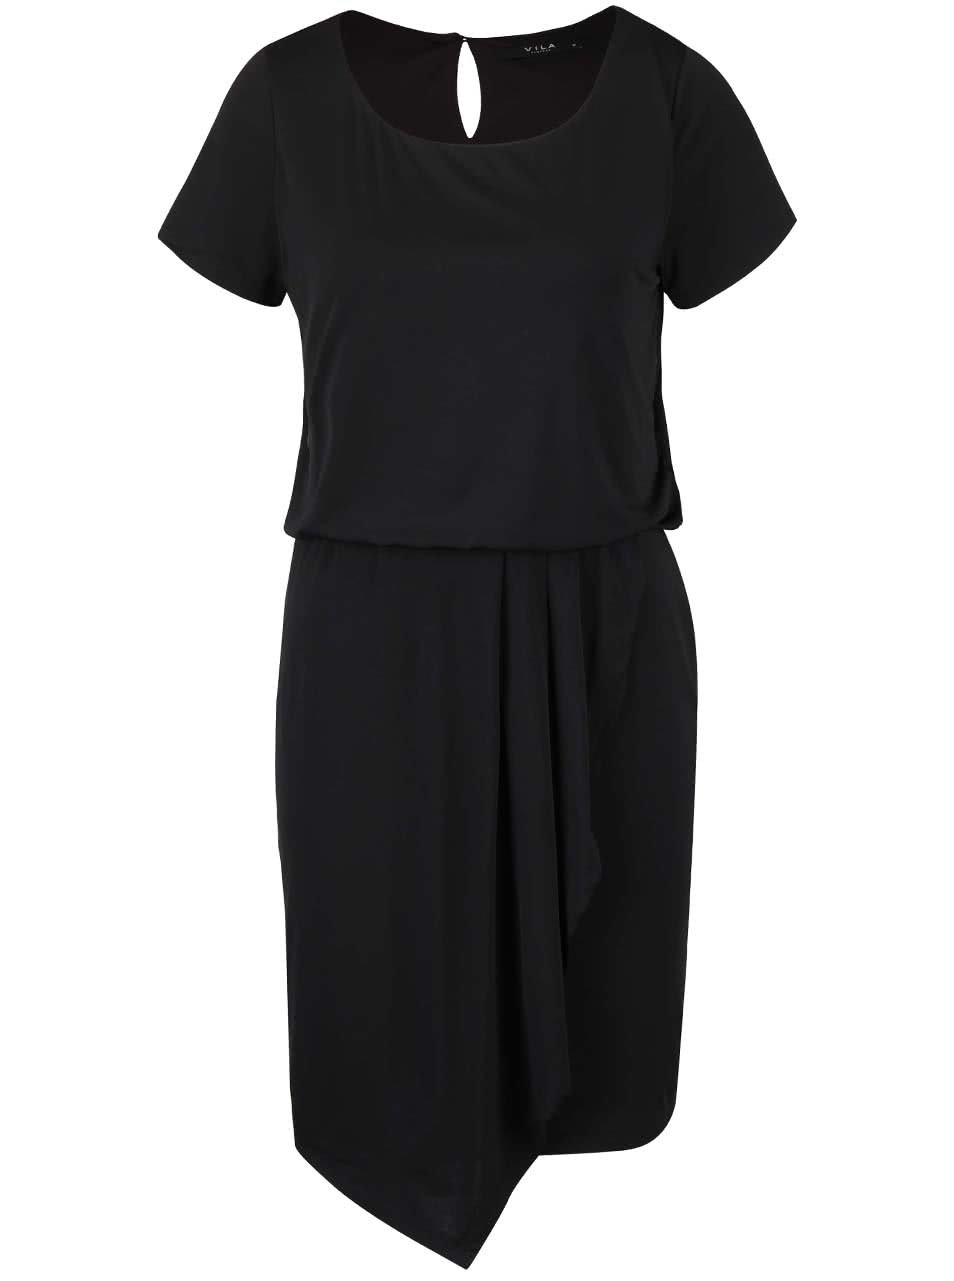 Černé šaty se stažením v pase a překládanou sukní VILA Palli